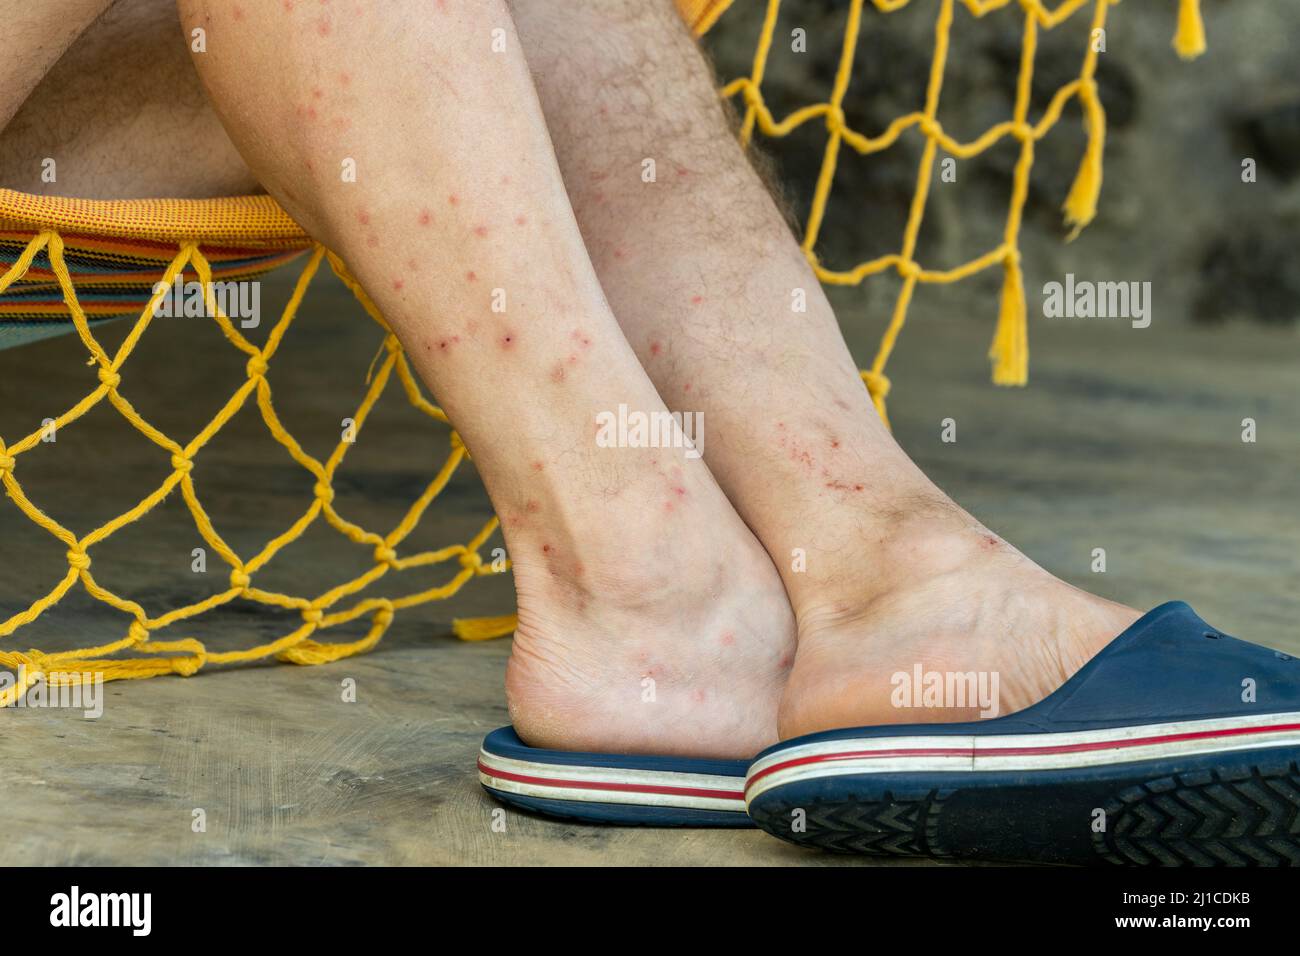 Las piernas picadas por insectos sedientos de sangre, picaduras de  mosquitos, mosca de la arena, pulgas de arena o moscas tropicales llamadas  puri puri, el problema de la gente que gasta el